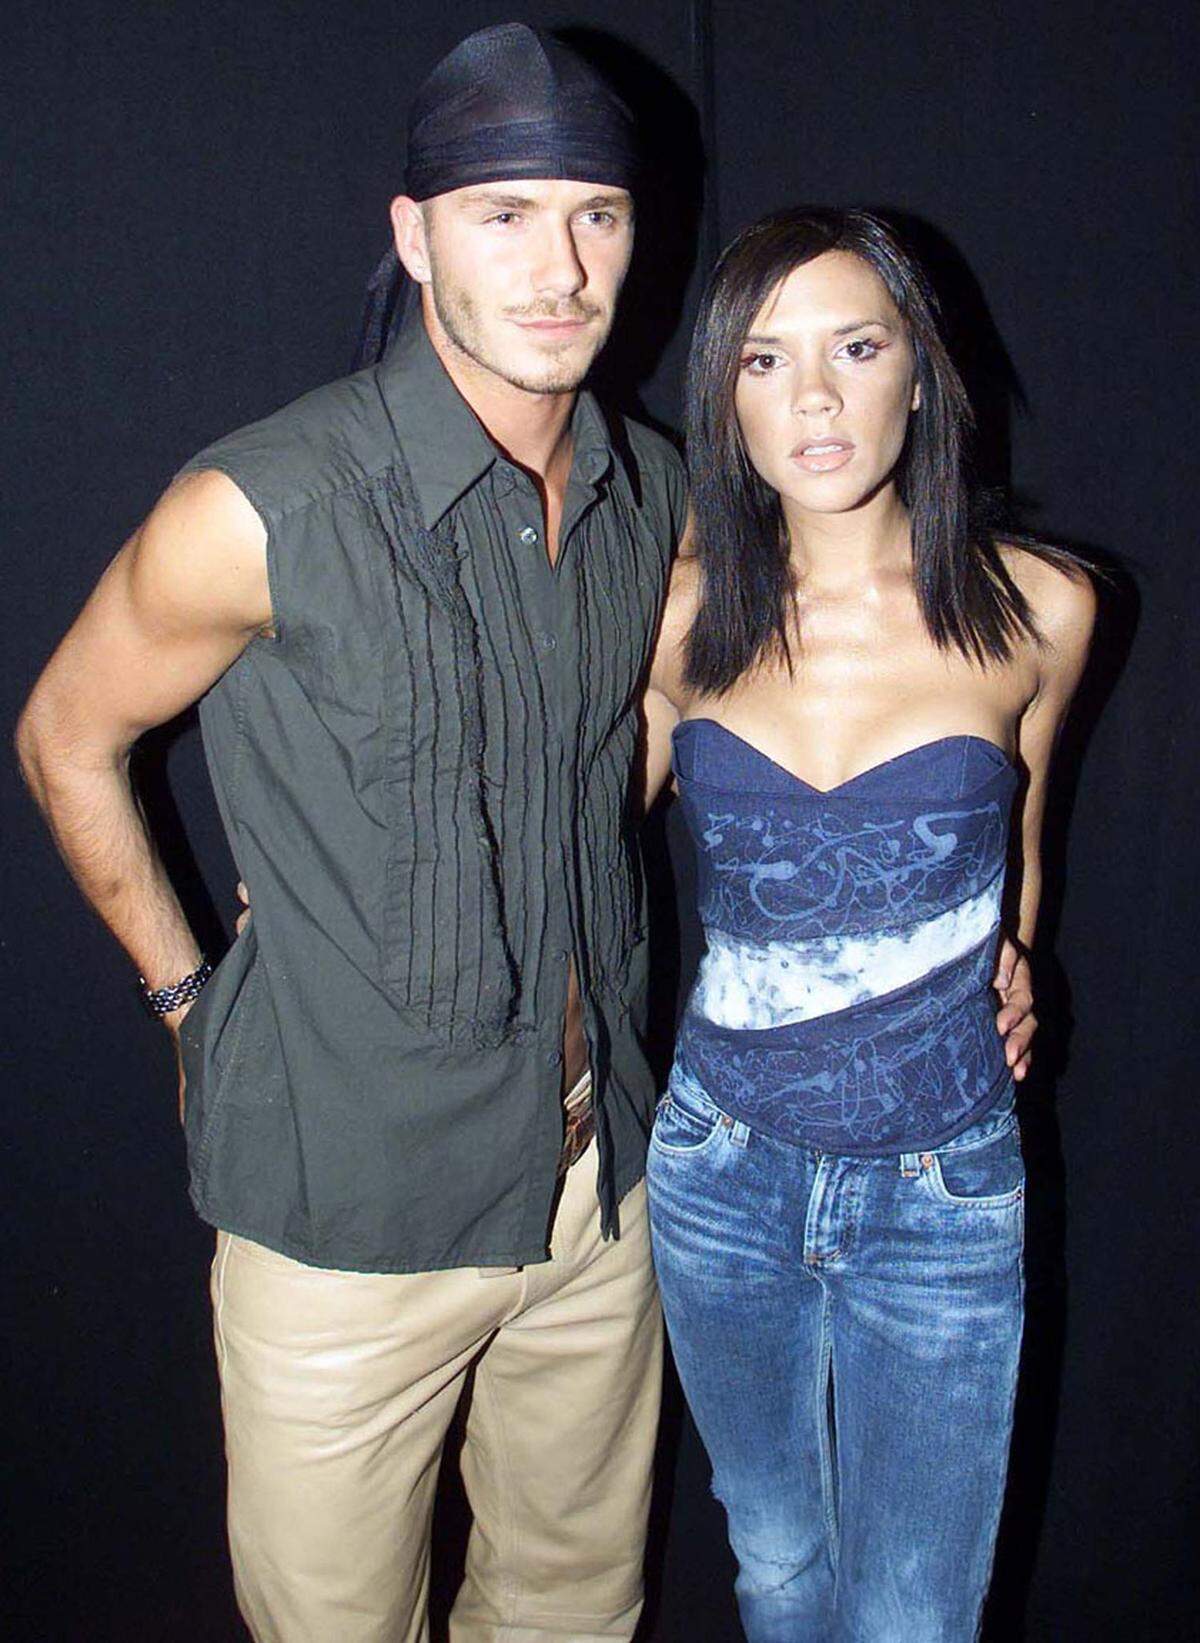 Ganz anders sah das aus, als sich noch nicht als Designerin, sondern als Spice Girl und Ehefrau von Fußballer David Beckham unterwegs war.